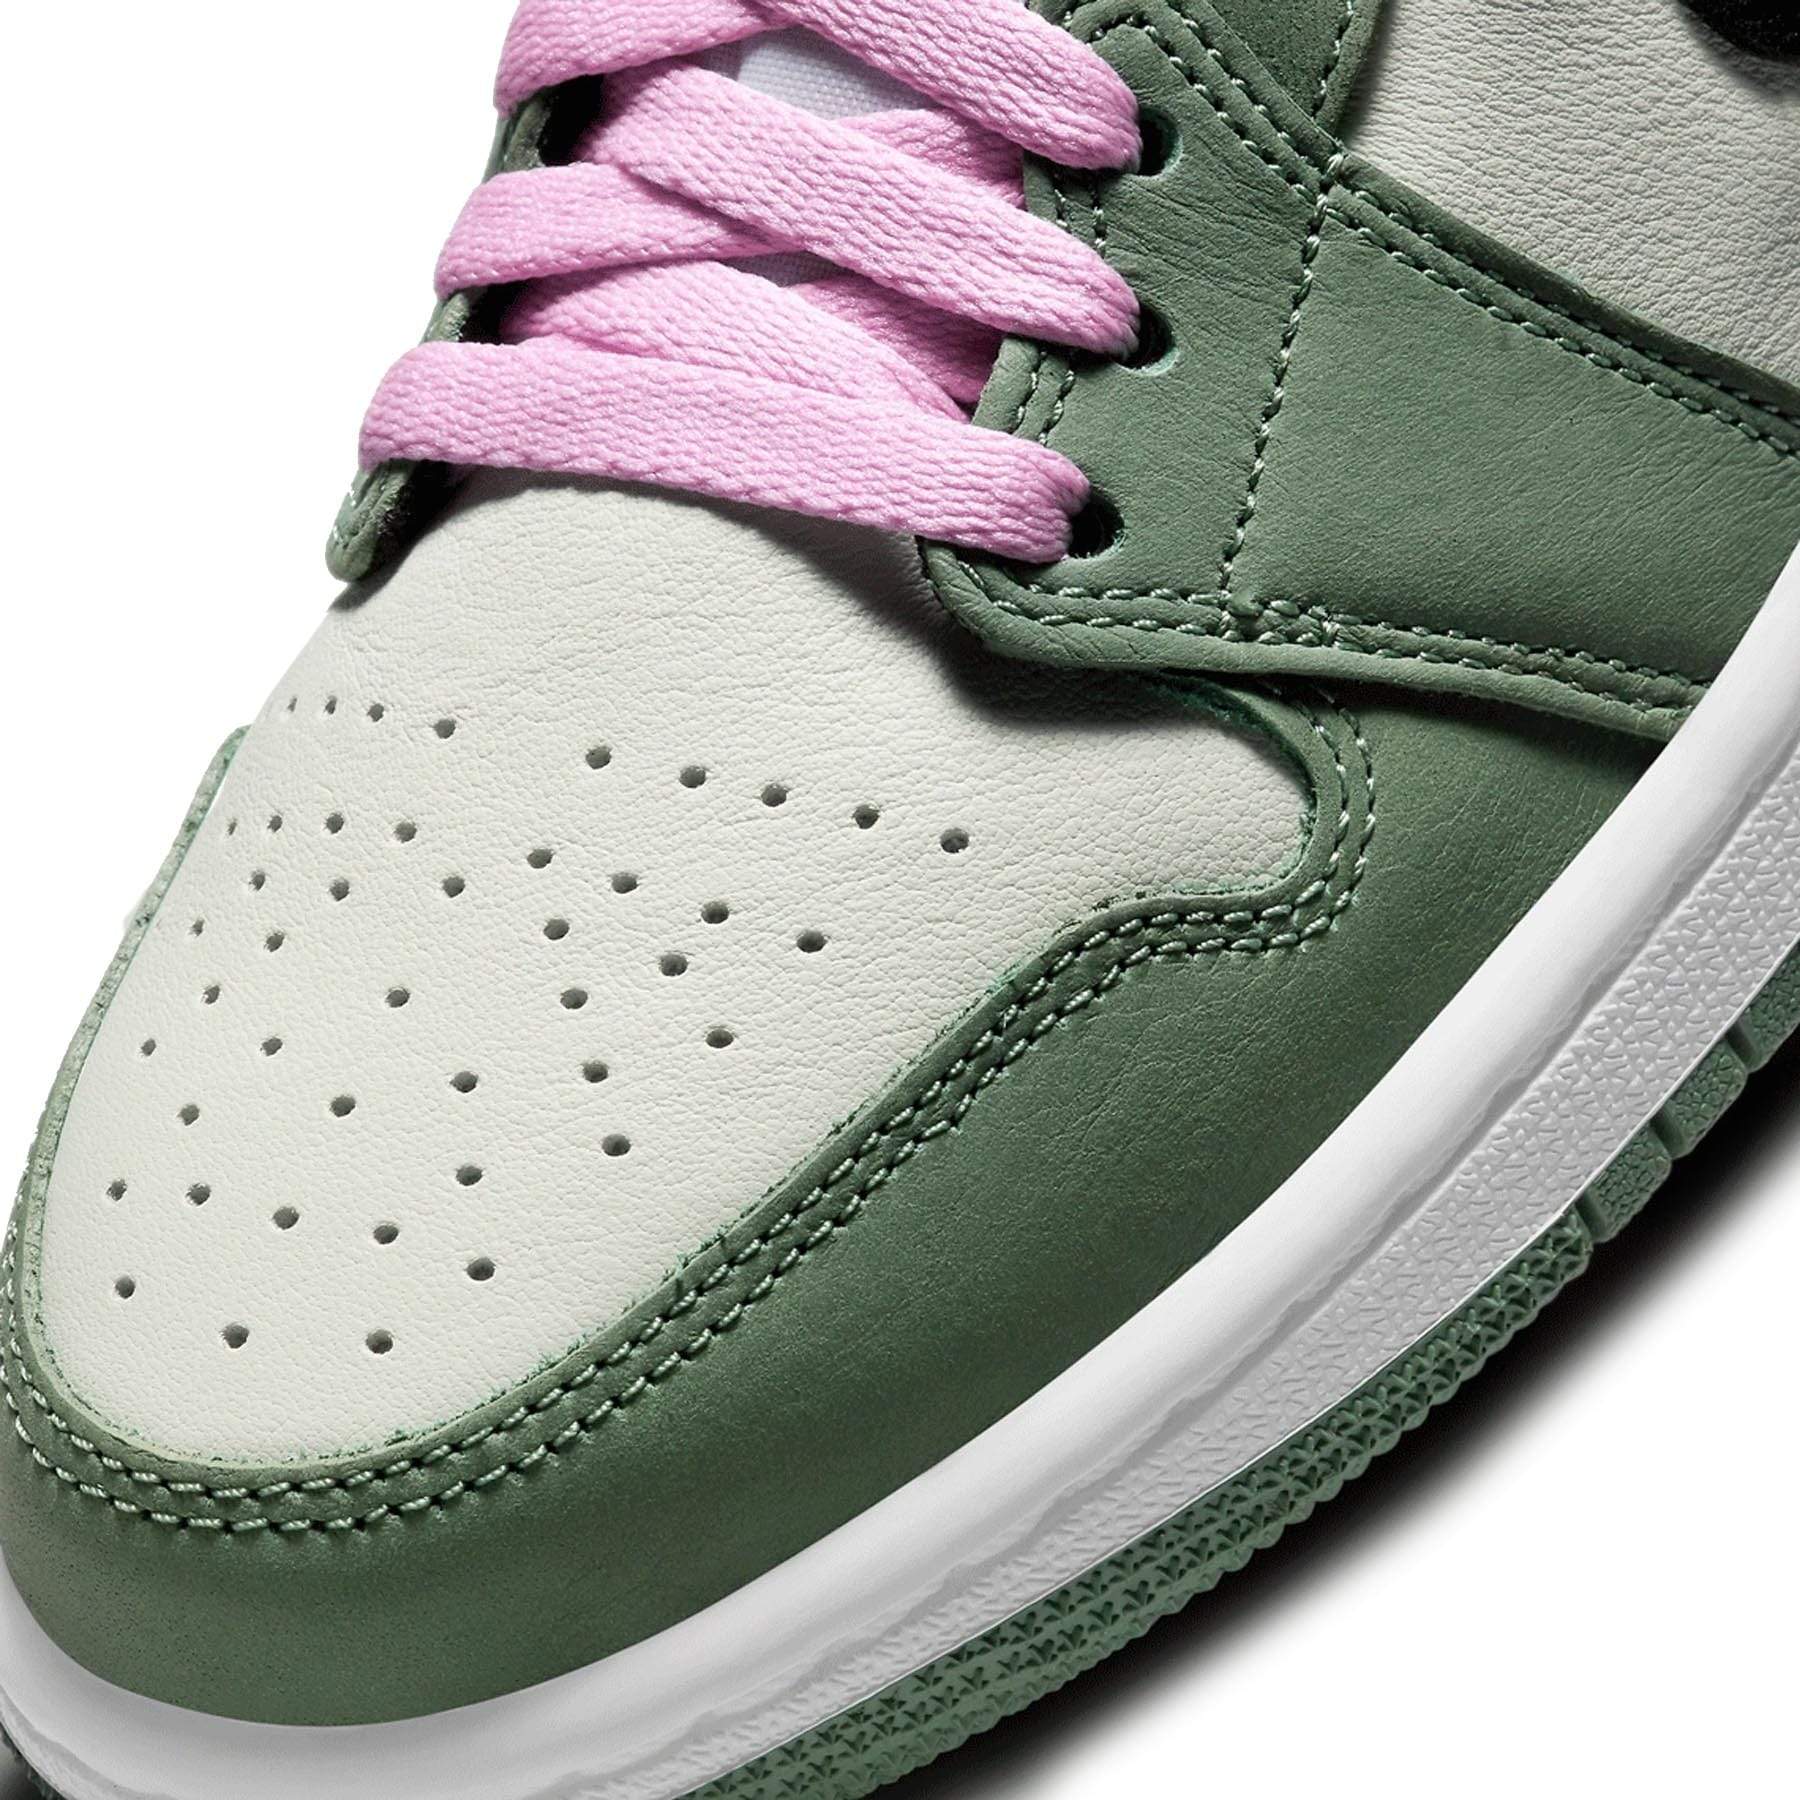 air jordan green pink laces